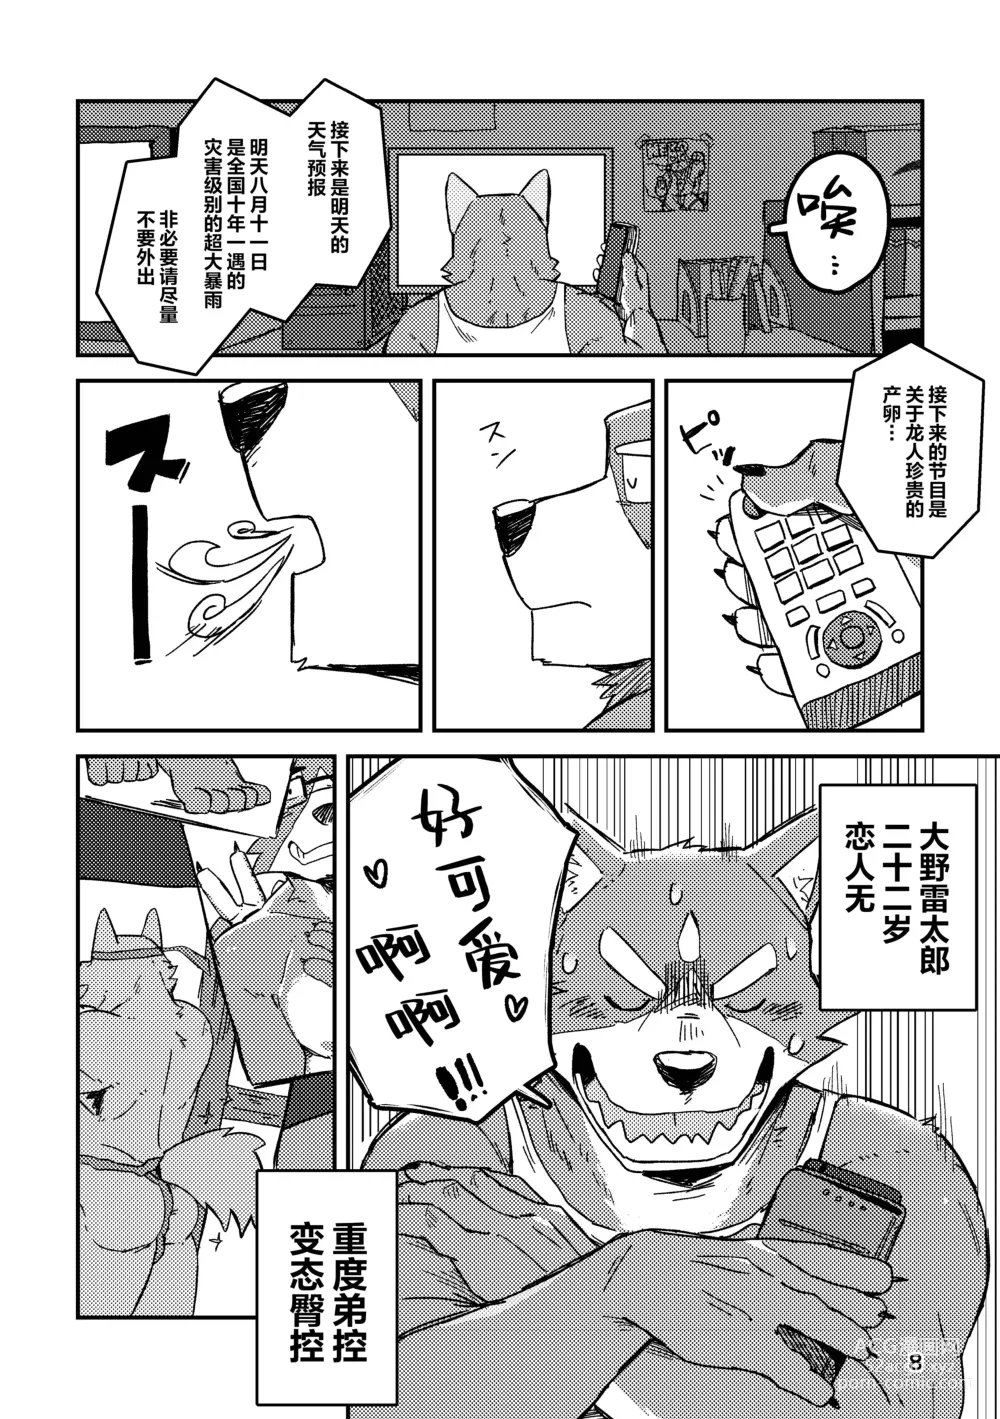 Page 8 of doujinshi 约定的龙穴